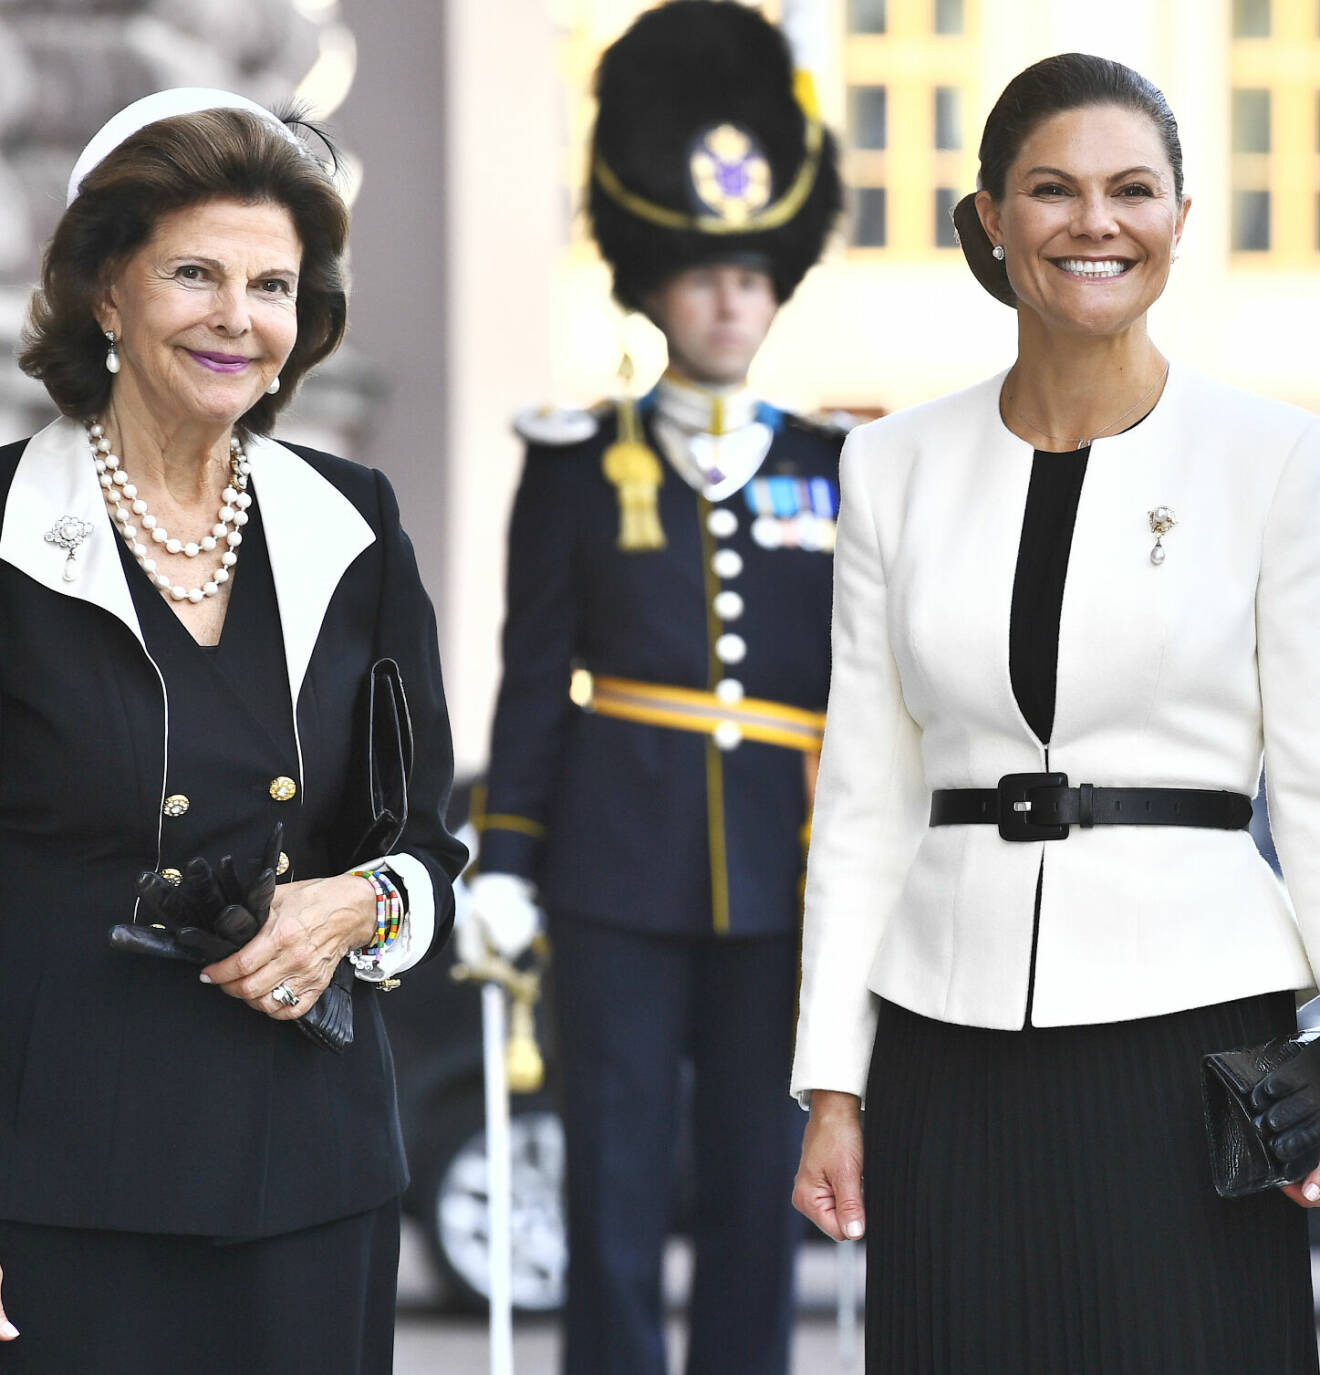 Drottning Silvia och kronprinsessan Victoria – klädkoden vid riksmötets öppnande